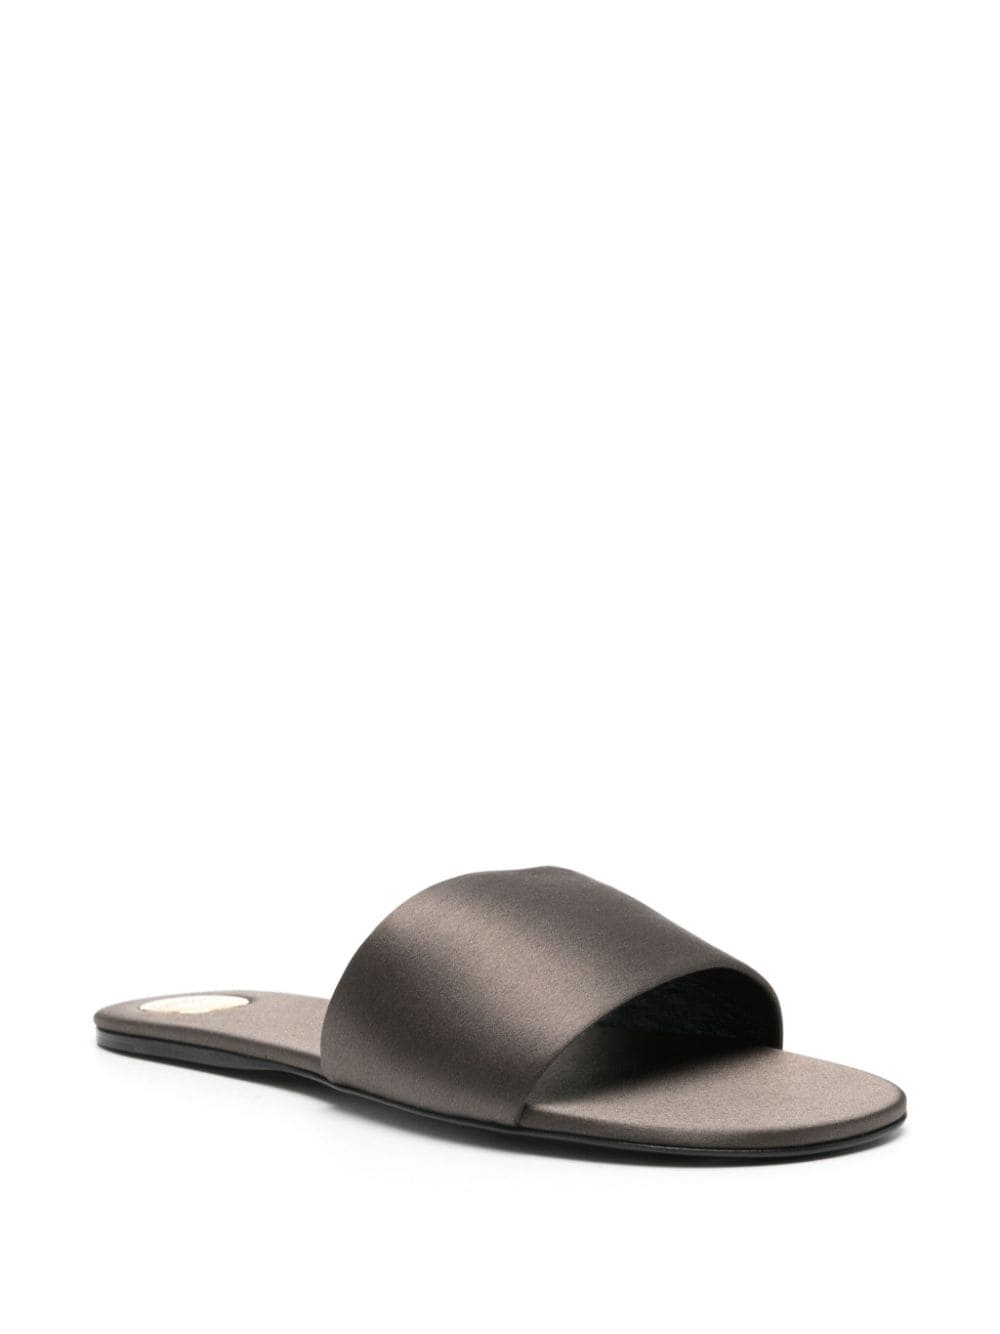 Saint Laurent Carlyle satin flat sandals - Grijs